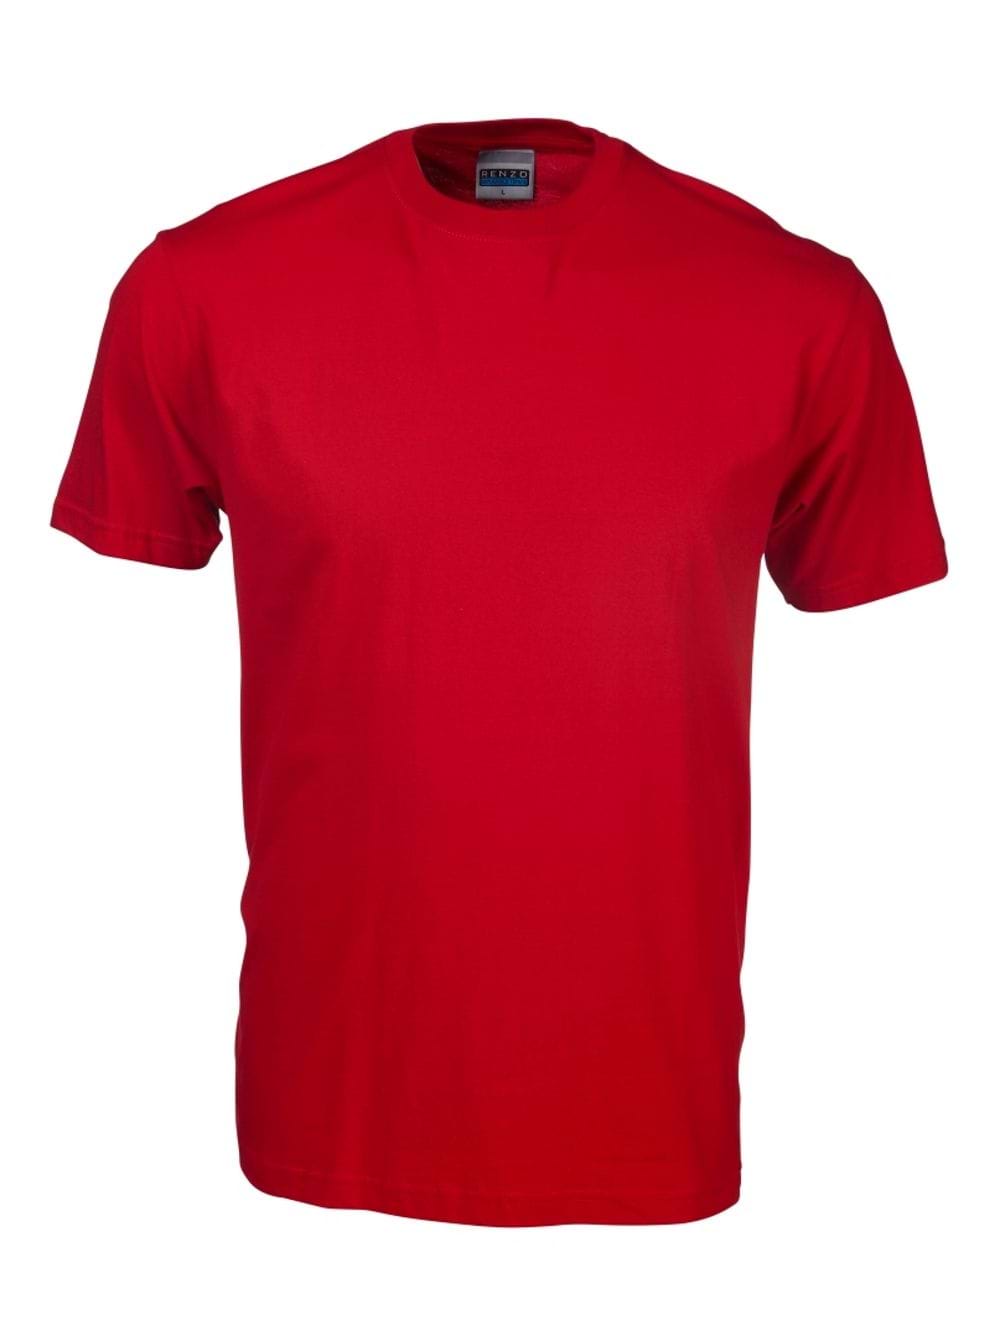 165G Crew Neck T-Shirt - Pillar Box Red